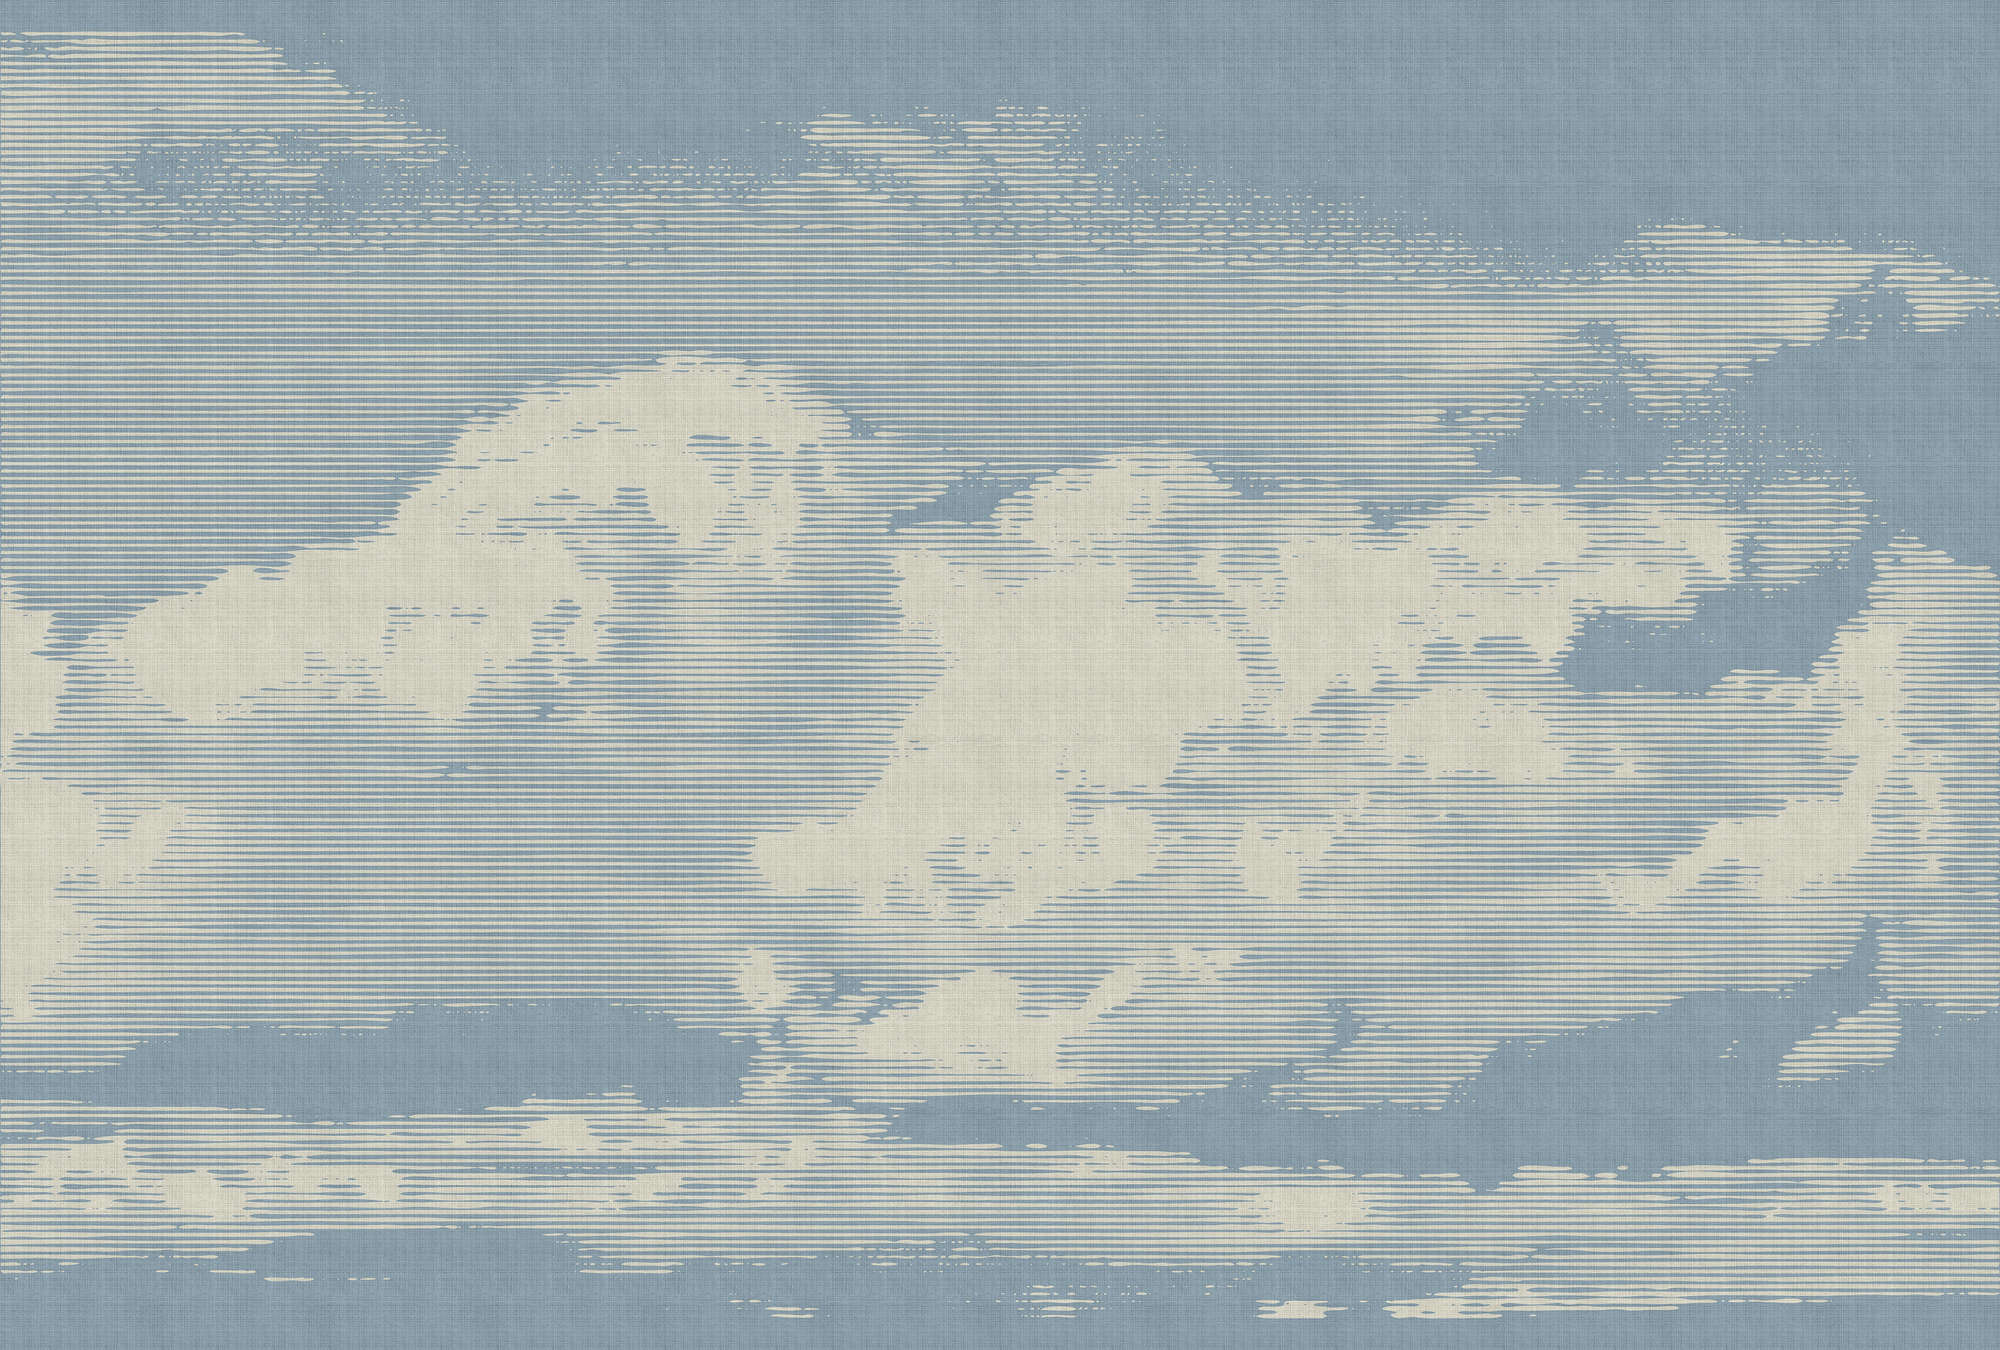             Clouds 1 - Carta da parati con motivo a nuvole in lino naturale - Beige, Blu | Natura qualita consistenza in tessuto non tessuto
        